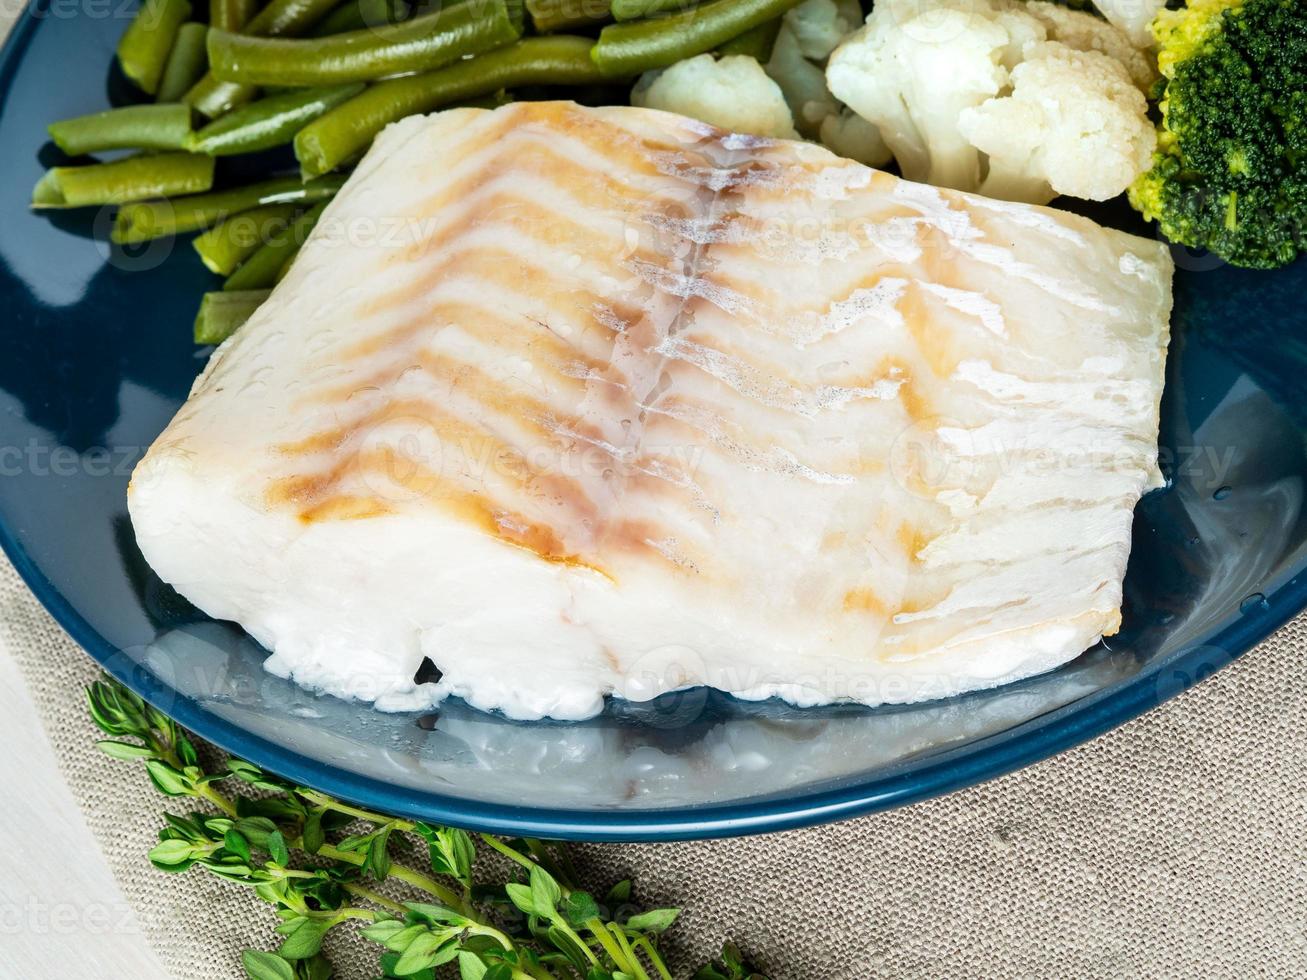 gebakken zeevis kabeljauwfilet met groenten op blauw bord, grijs servet, zijaanzicht, close-up. gezond dieet foto